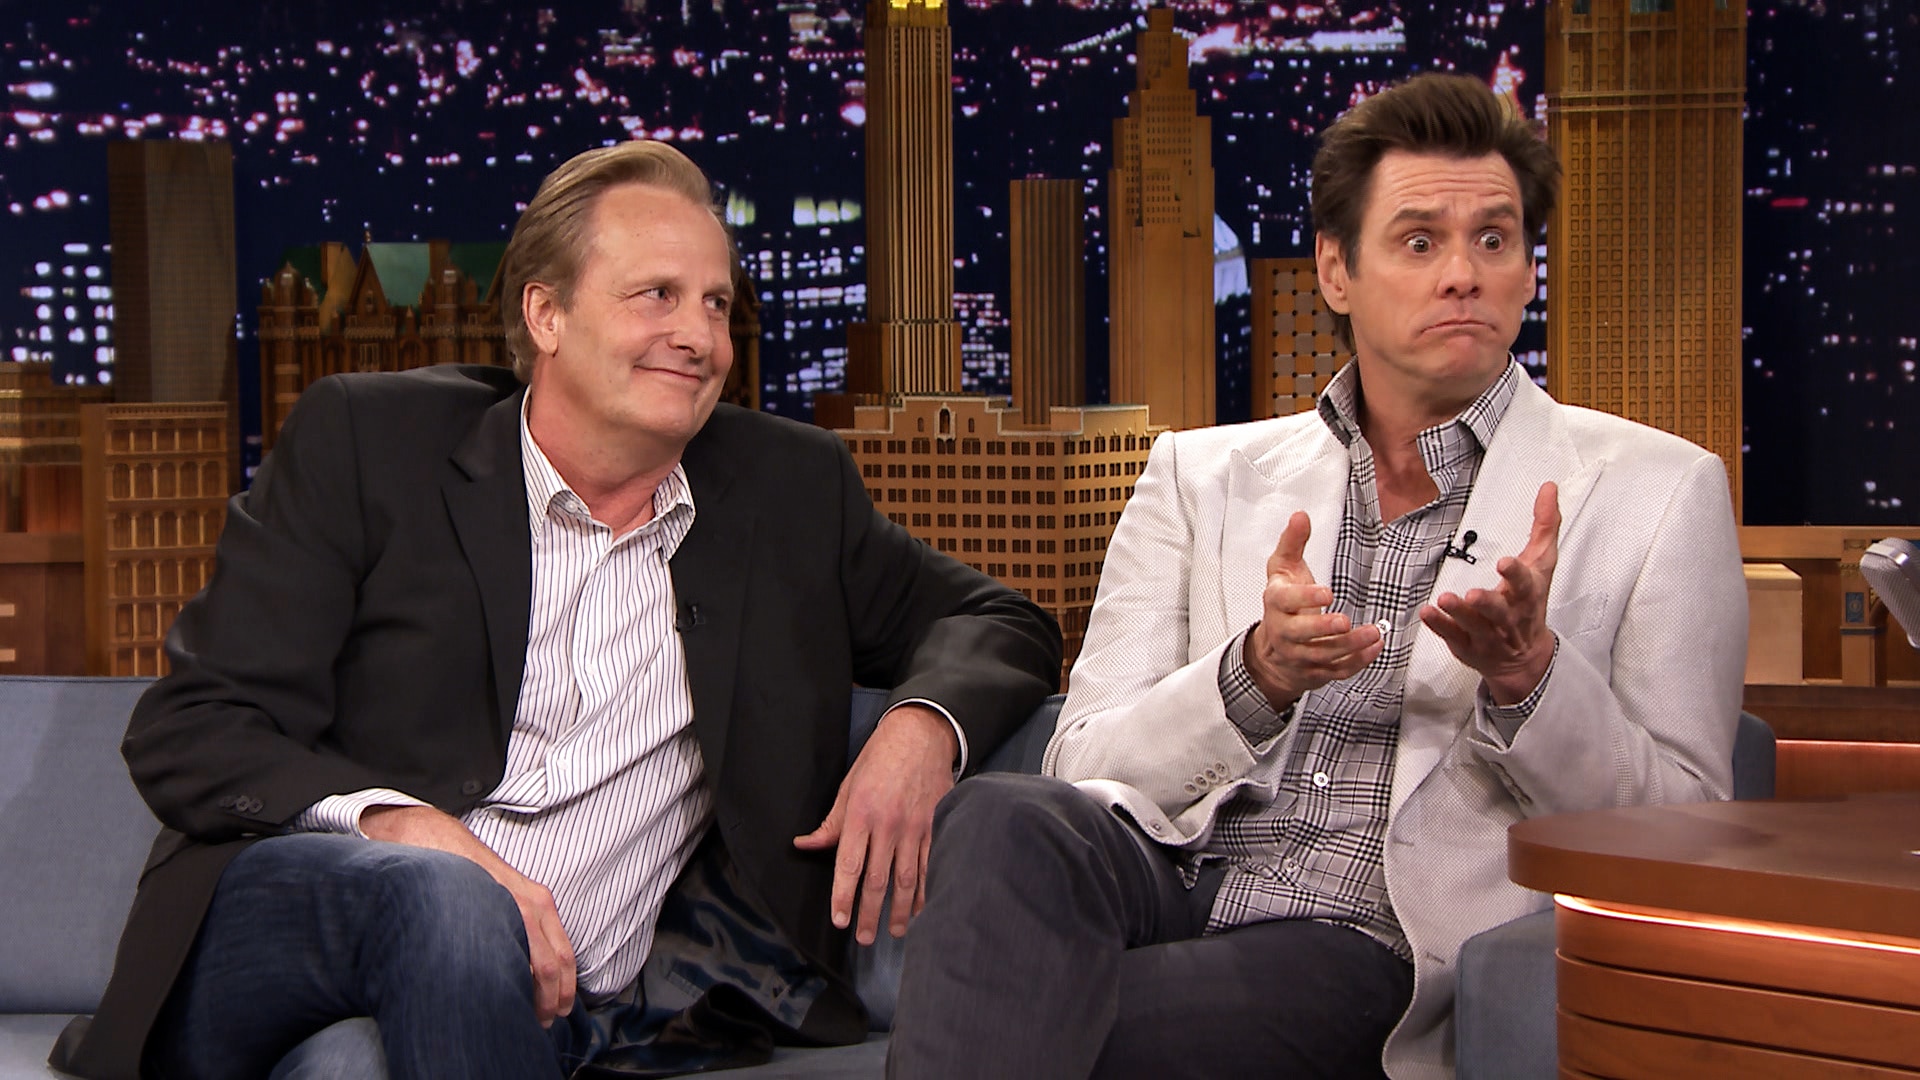 Watch The Tonight Show Starring Jimmy Fallon Interview Jim Carrey And Jeff Daniels Talk Dumb